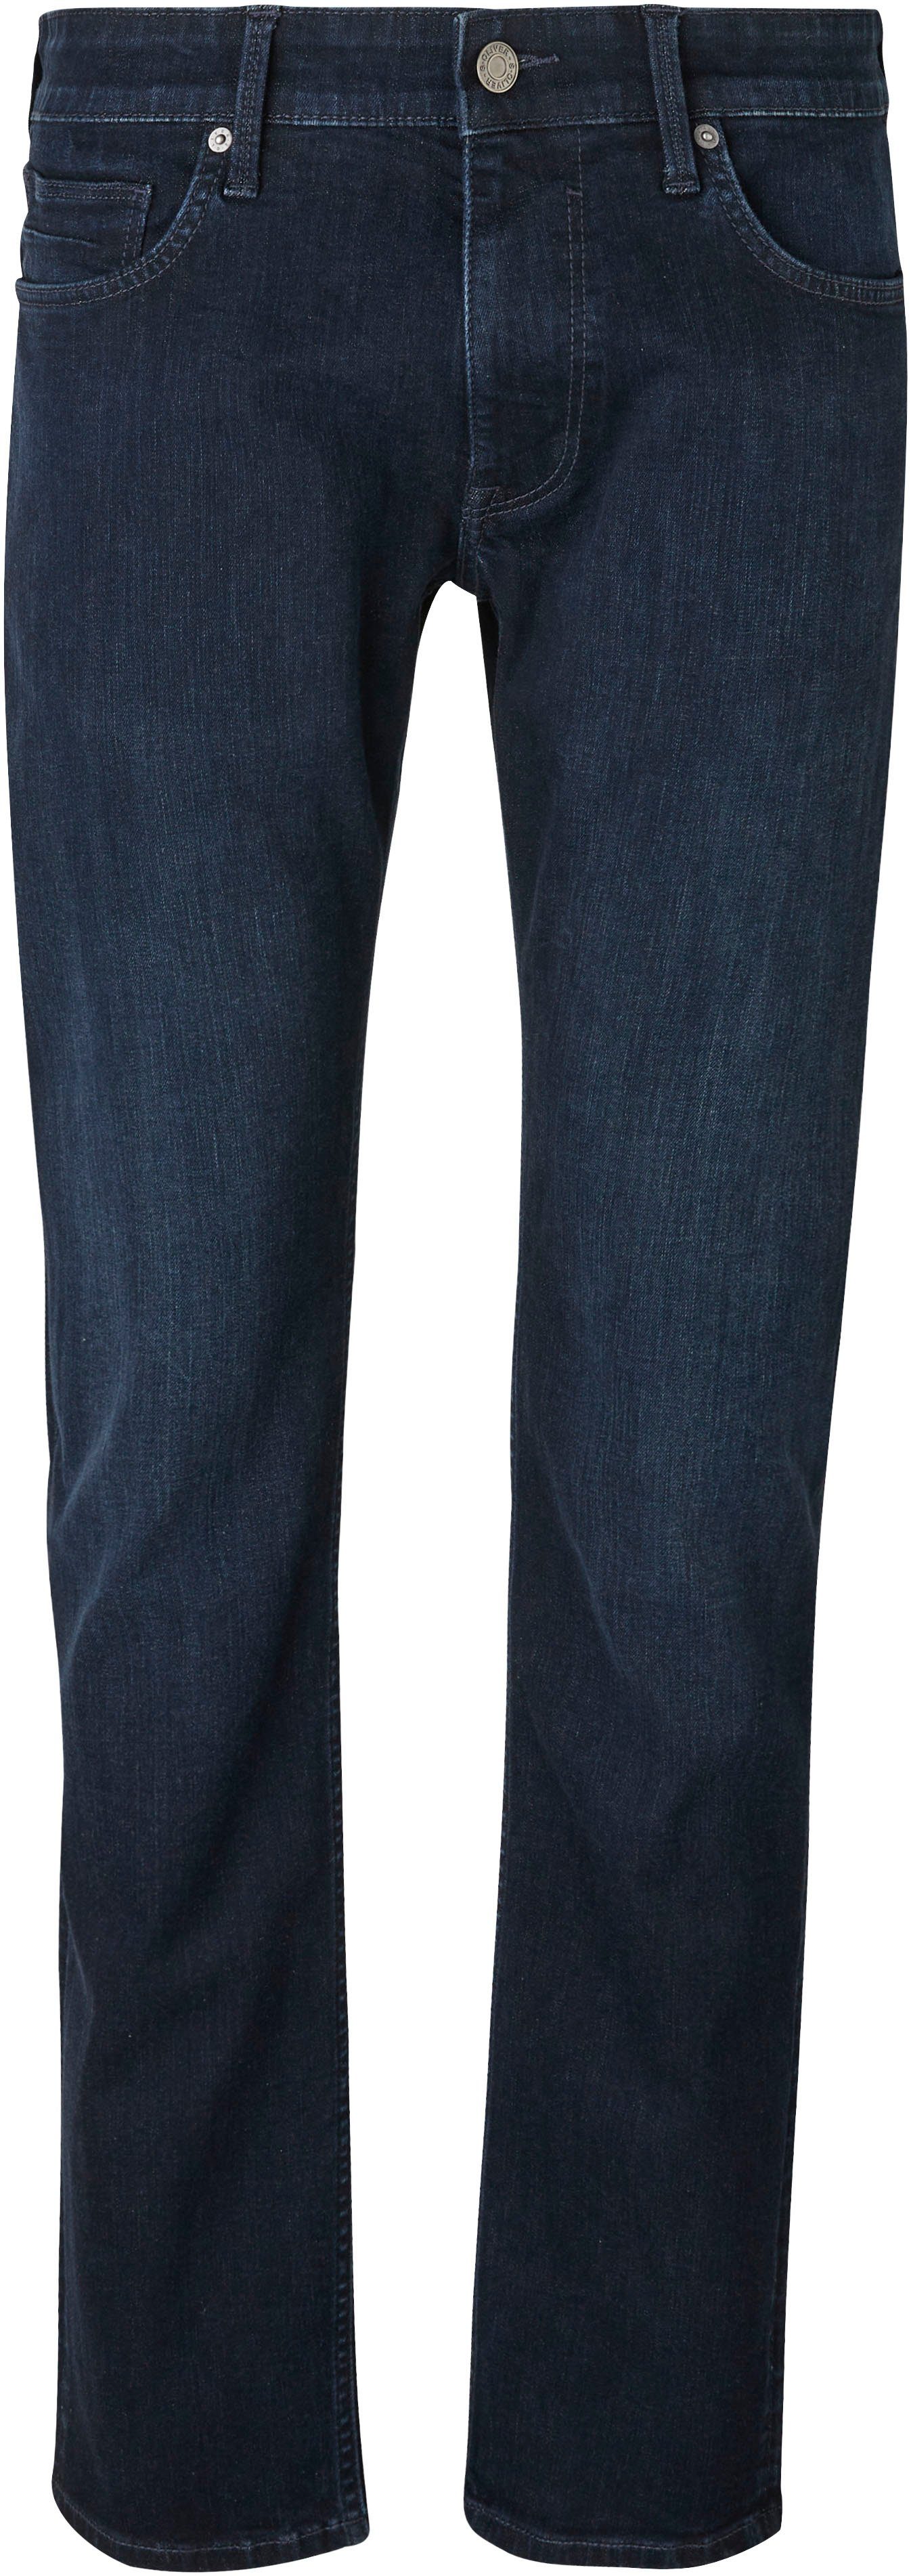 s.Oliver Bequeme Jeans mit Eingrifftaschen dark 32 blue Gesäß- und